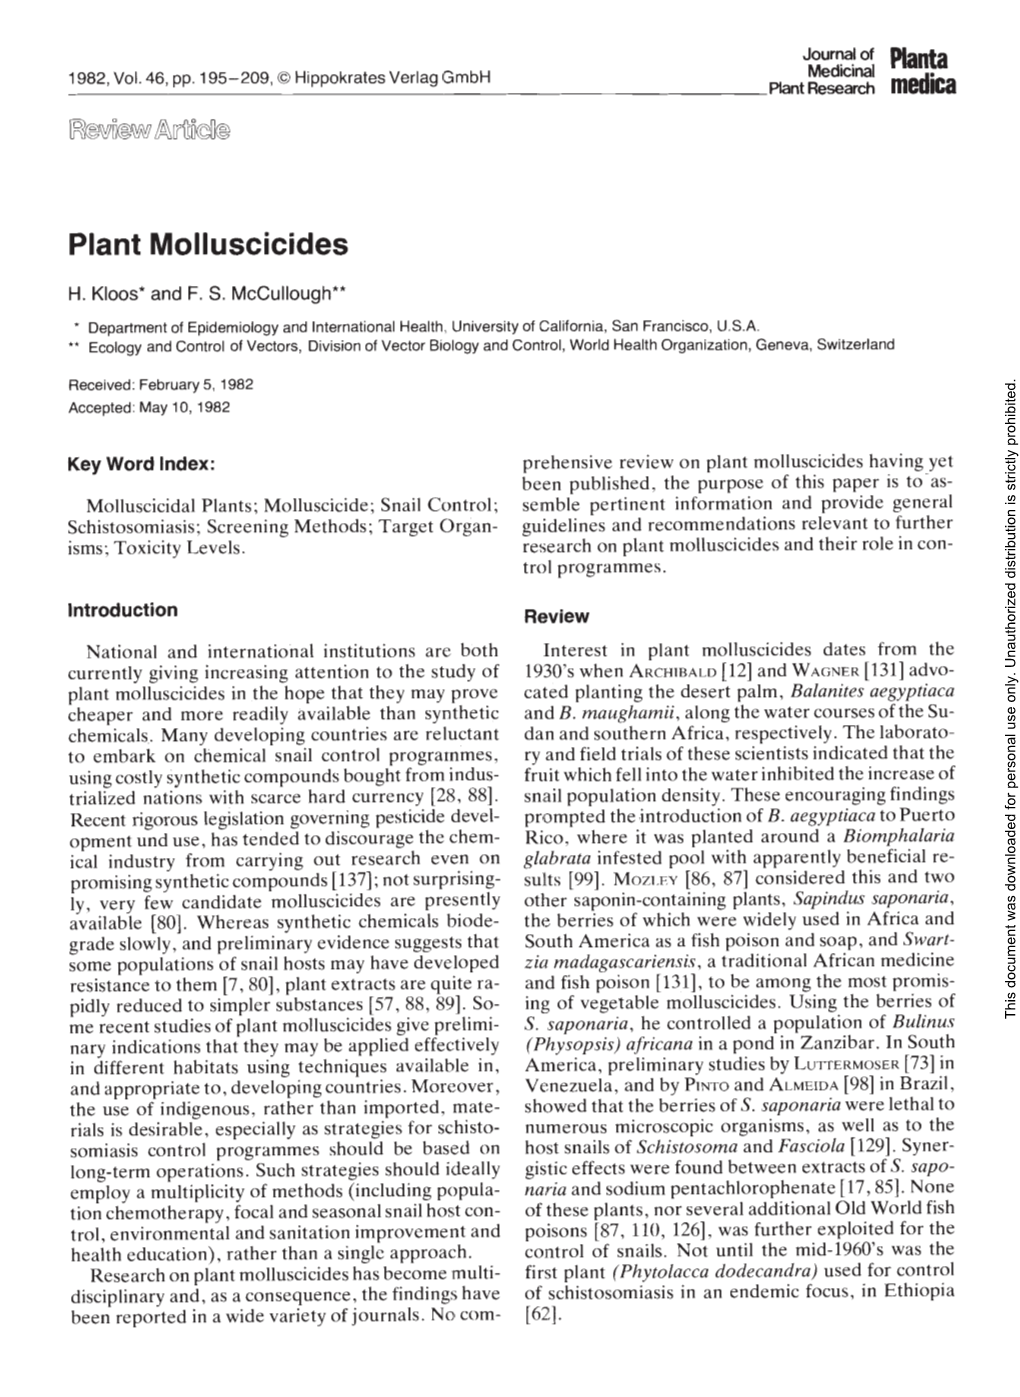 Plant Molluscicides